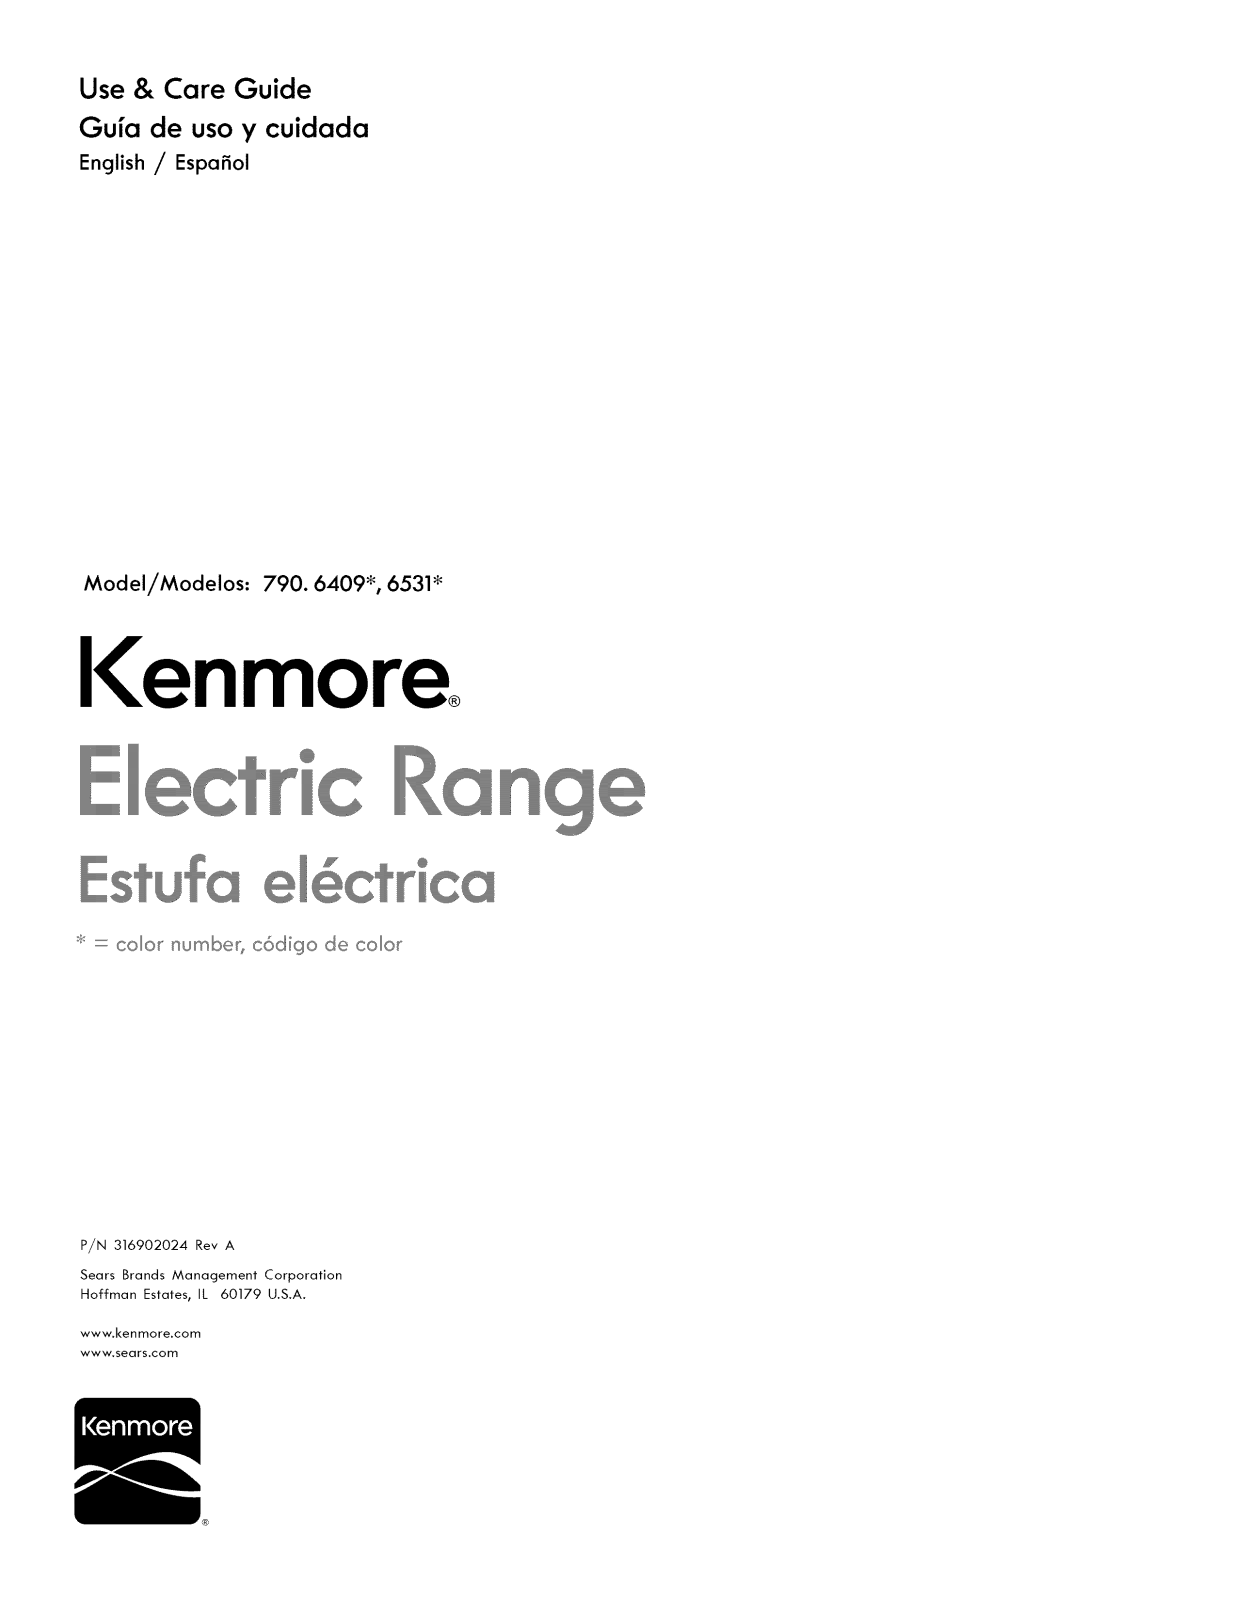 Kenmore 79065312210, 79065319210 Owner’s Manual